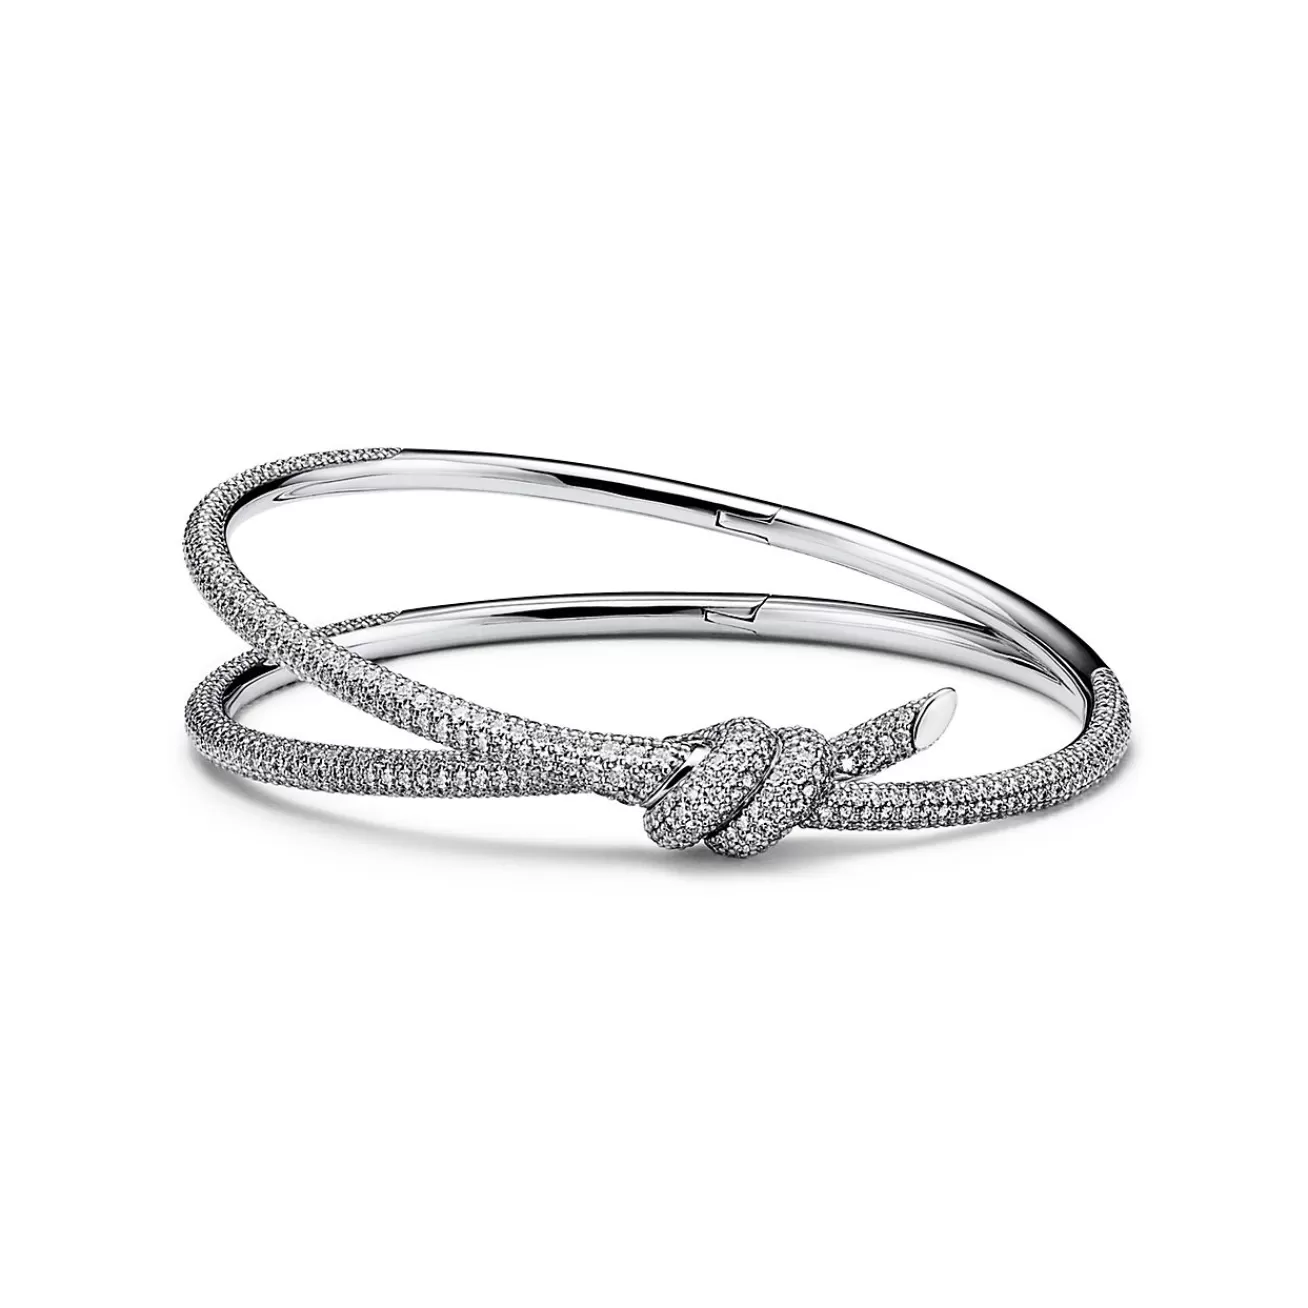 Tiffany & Co. Tiffany Knot Double Row Bracelet in White Gold with Diamonds | ^ Bracelets | Diamond Jewelry